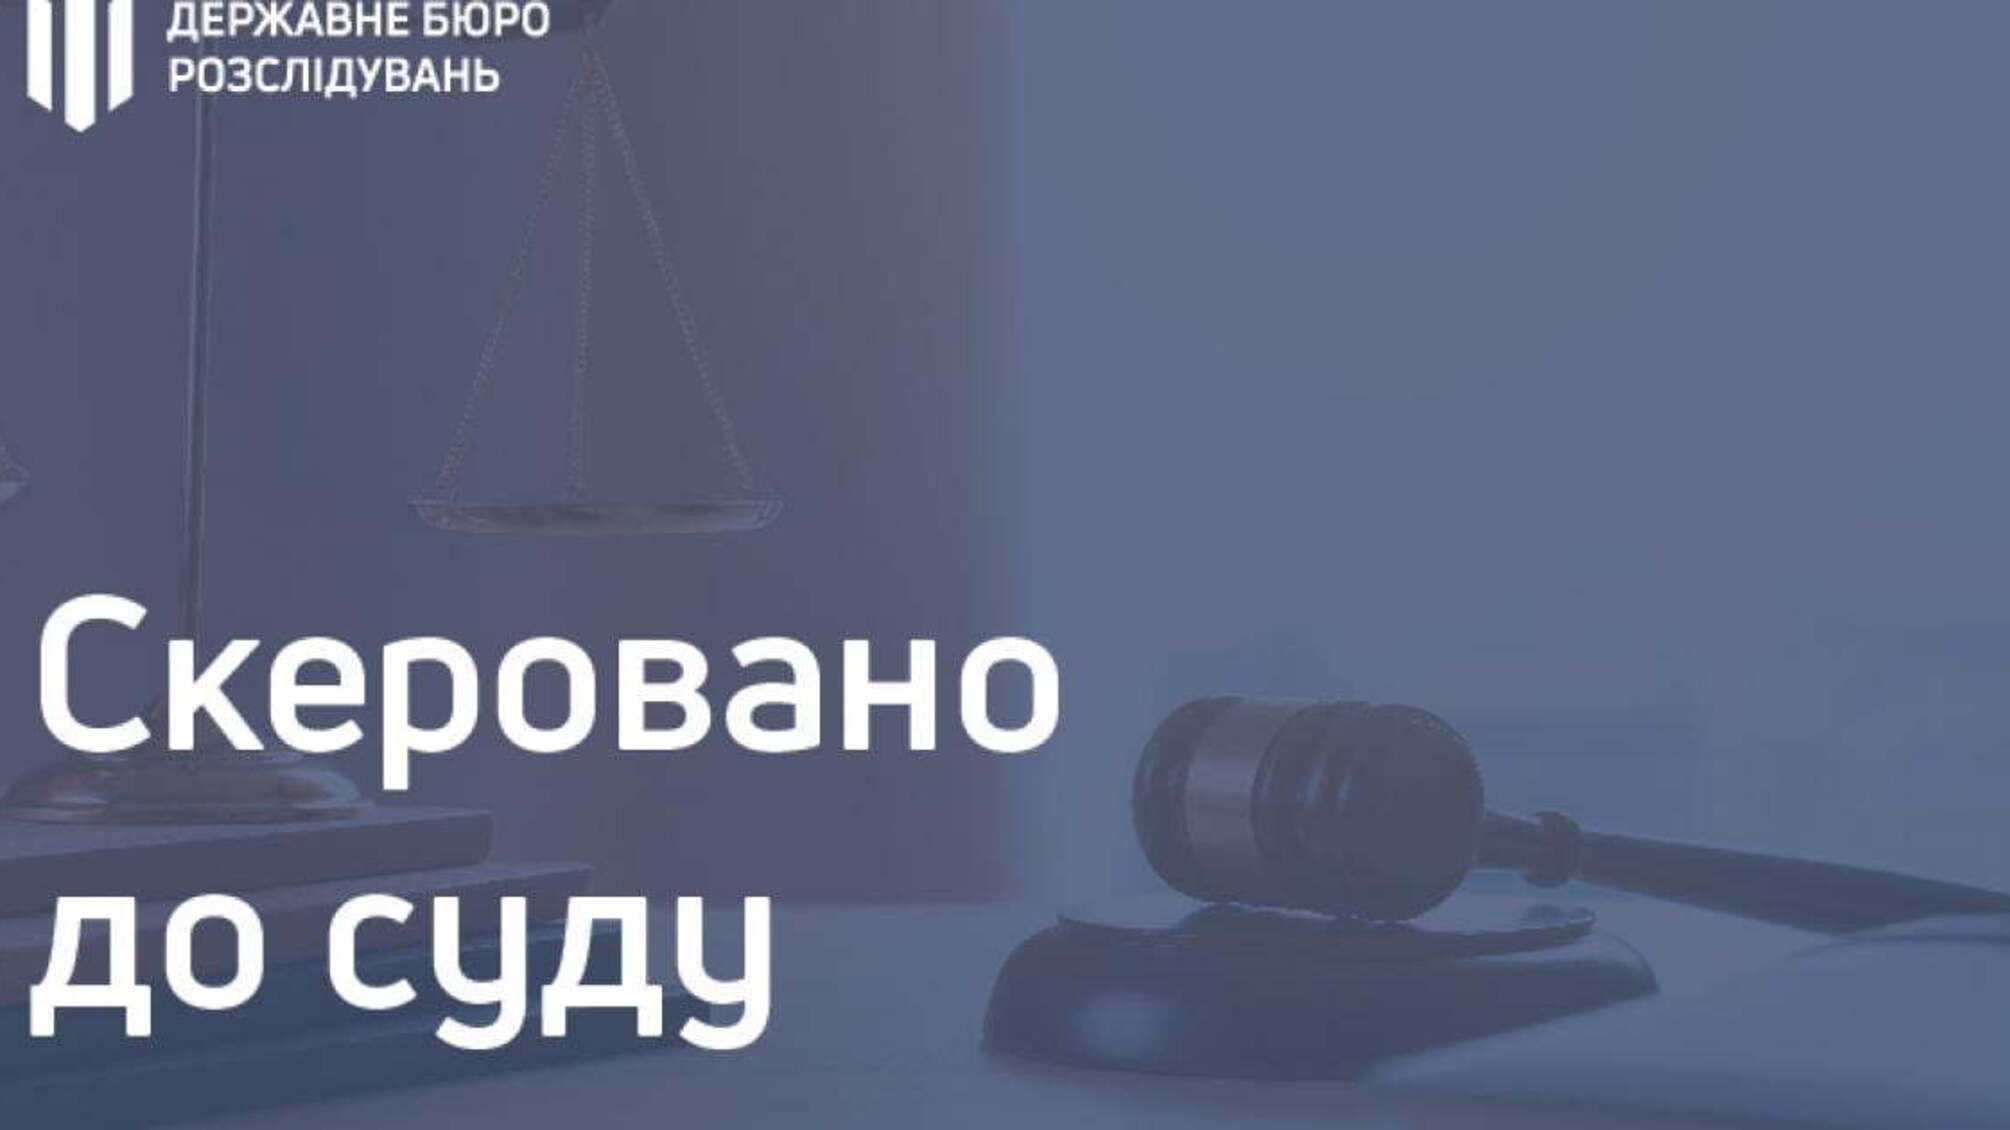 800 тисяч гривень збитків - екссуддя постане перед судом за постановлення завідомо неправосудного рішення